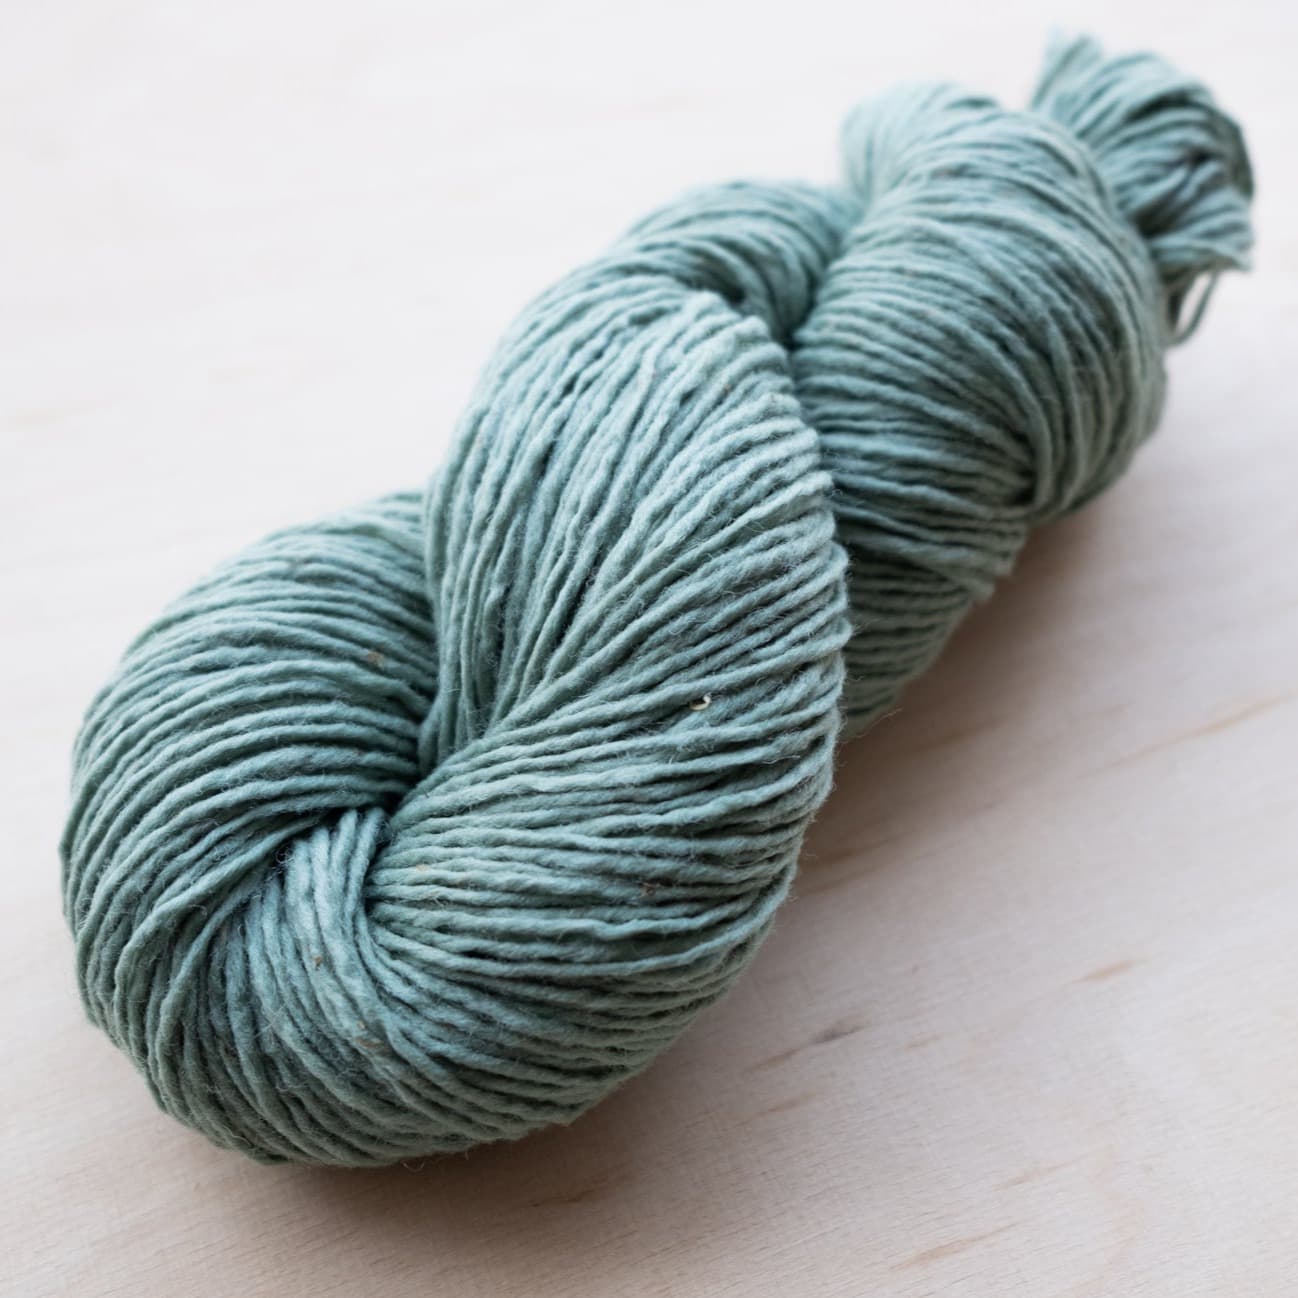 Manta yarn - 100% wool